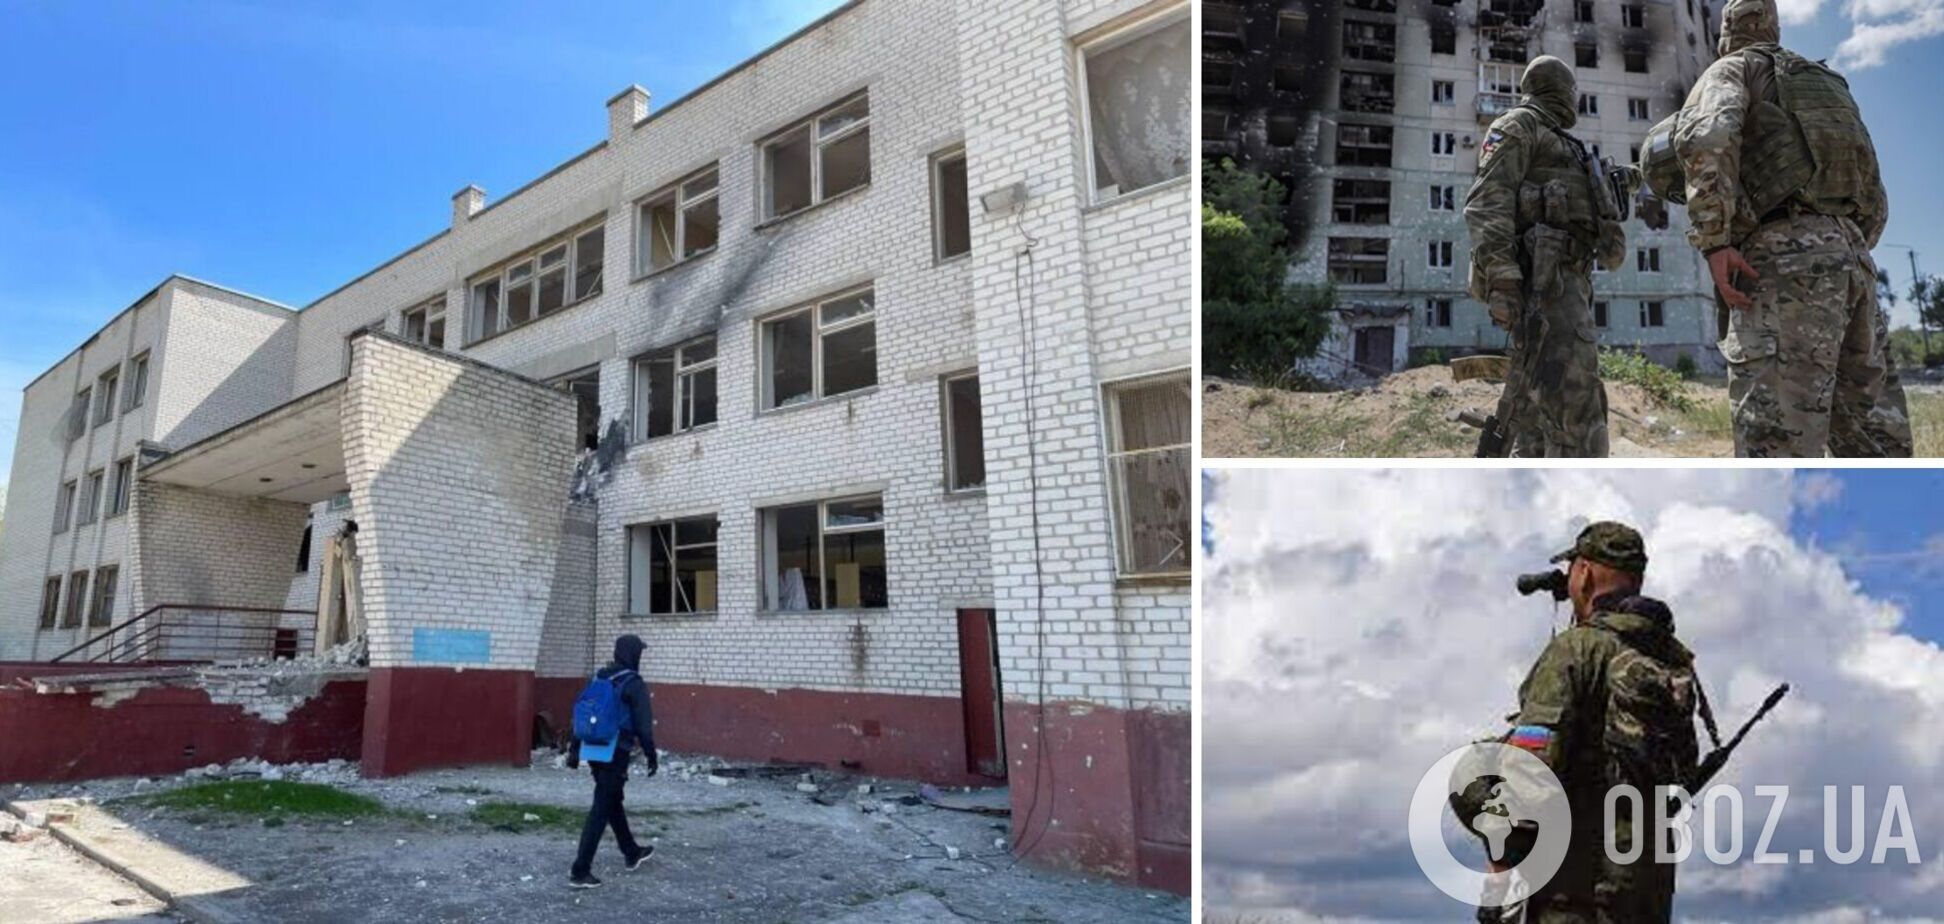 Оккупанты забрали каникулы у школьников в Луганской области